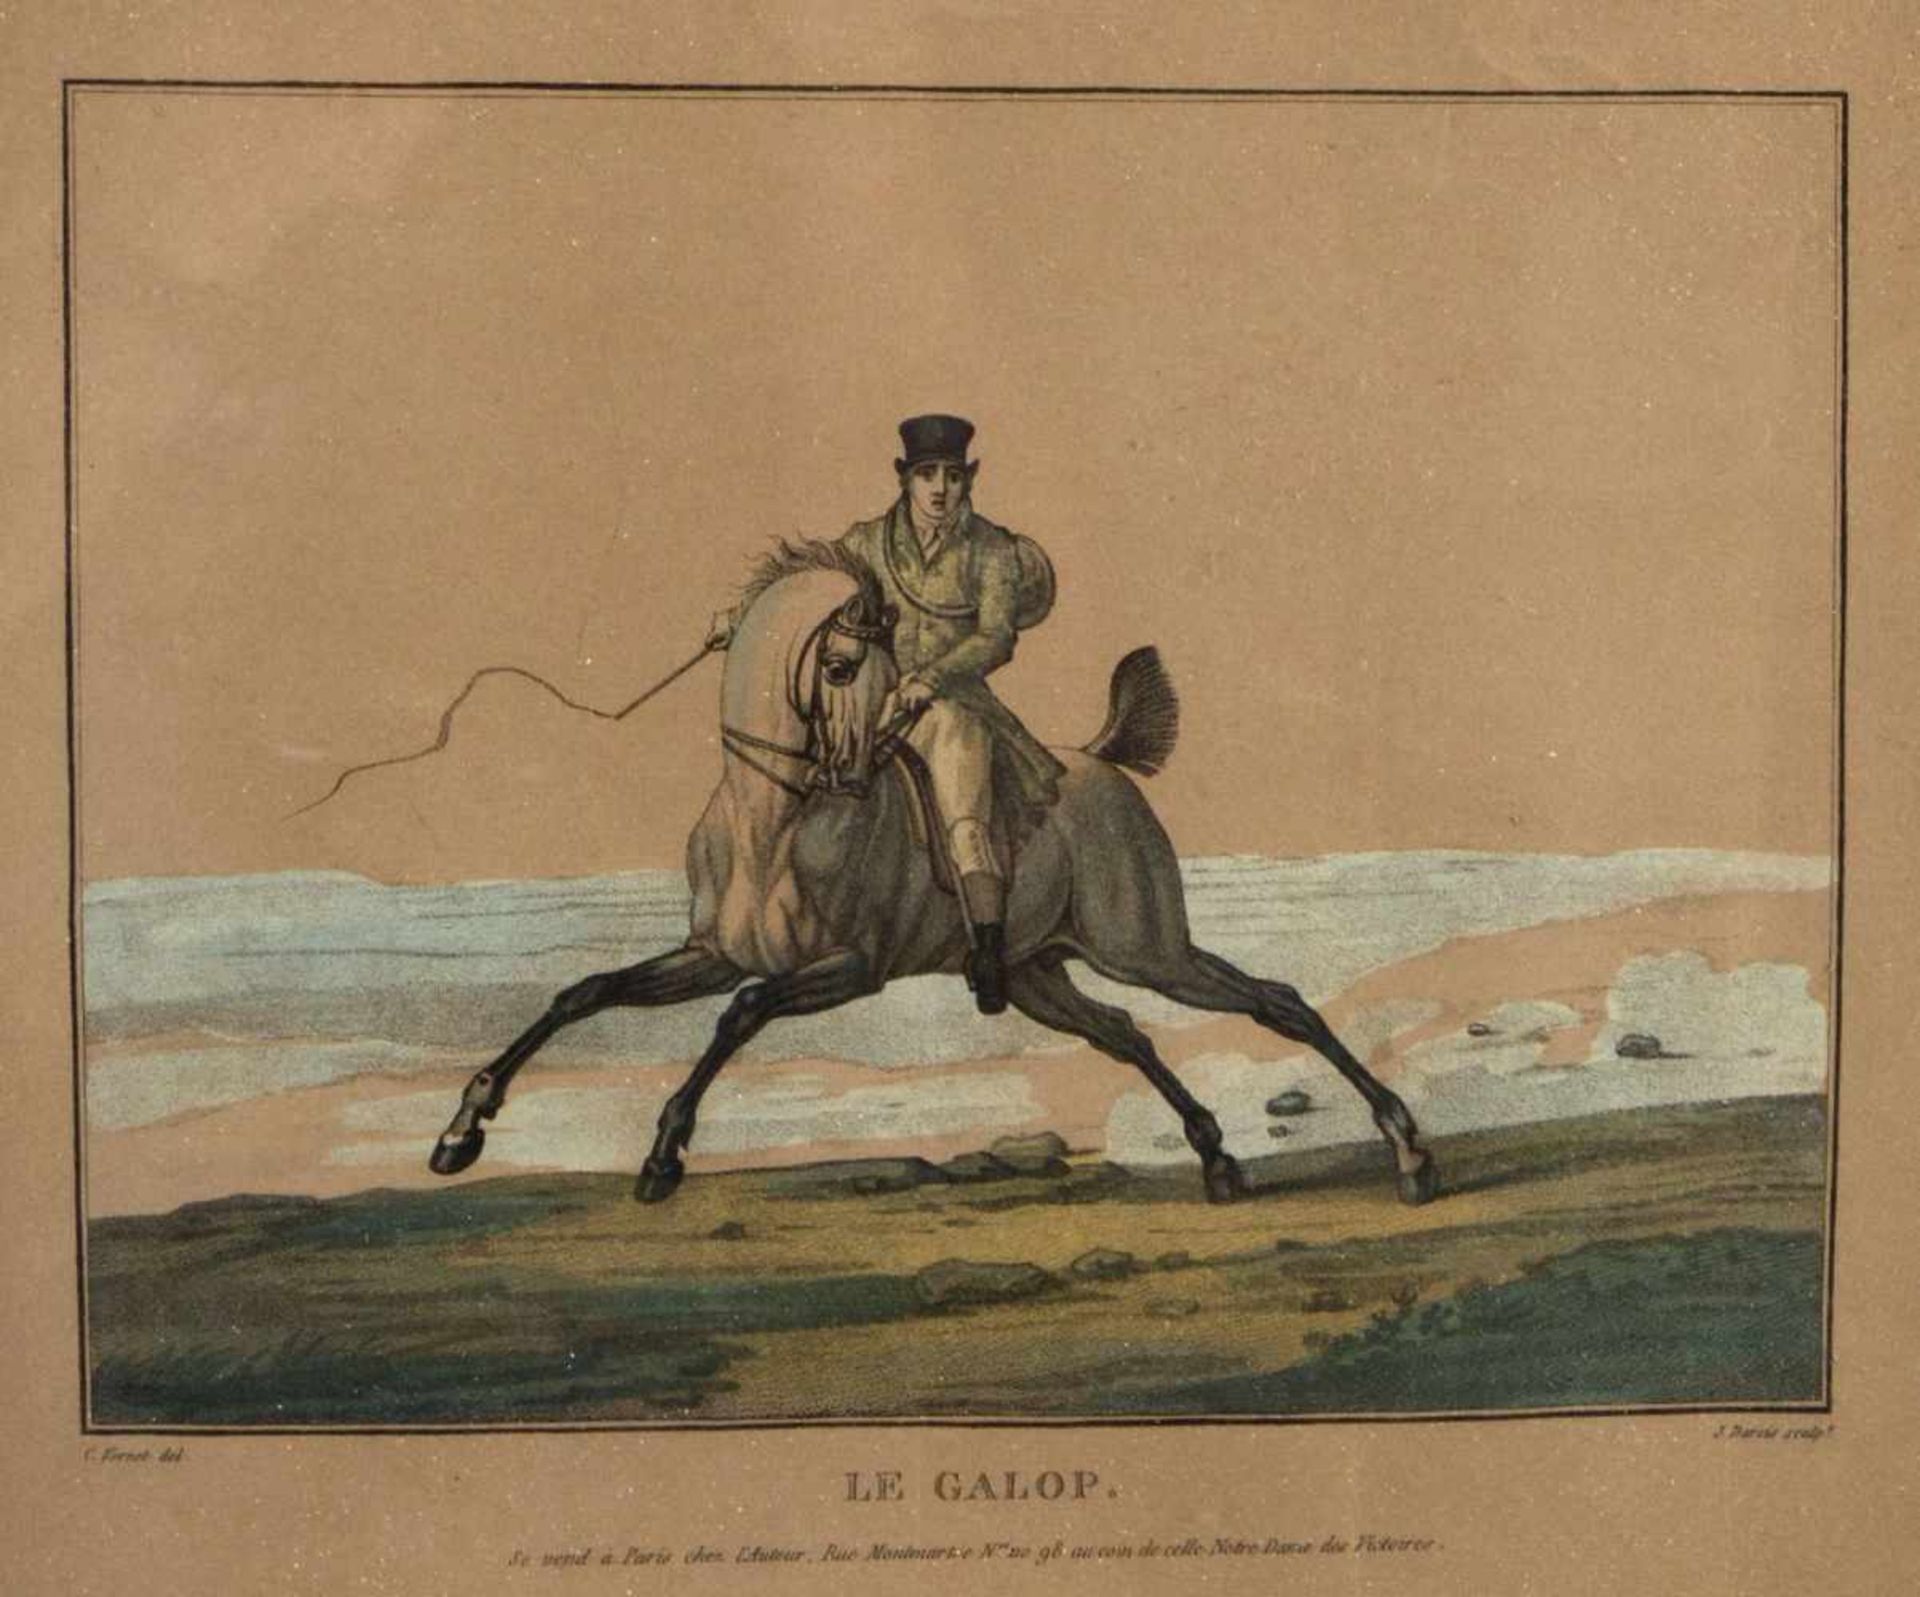 Darcis, J.Cheval de Chasse. Le Galop. 2 kol. Radierungen. 24,5 x 28,5 cm. Gebräunt und besch. - Bild 3 aus 3